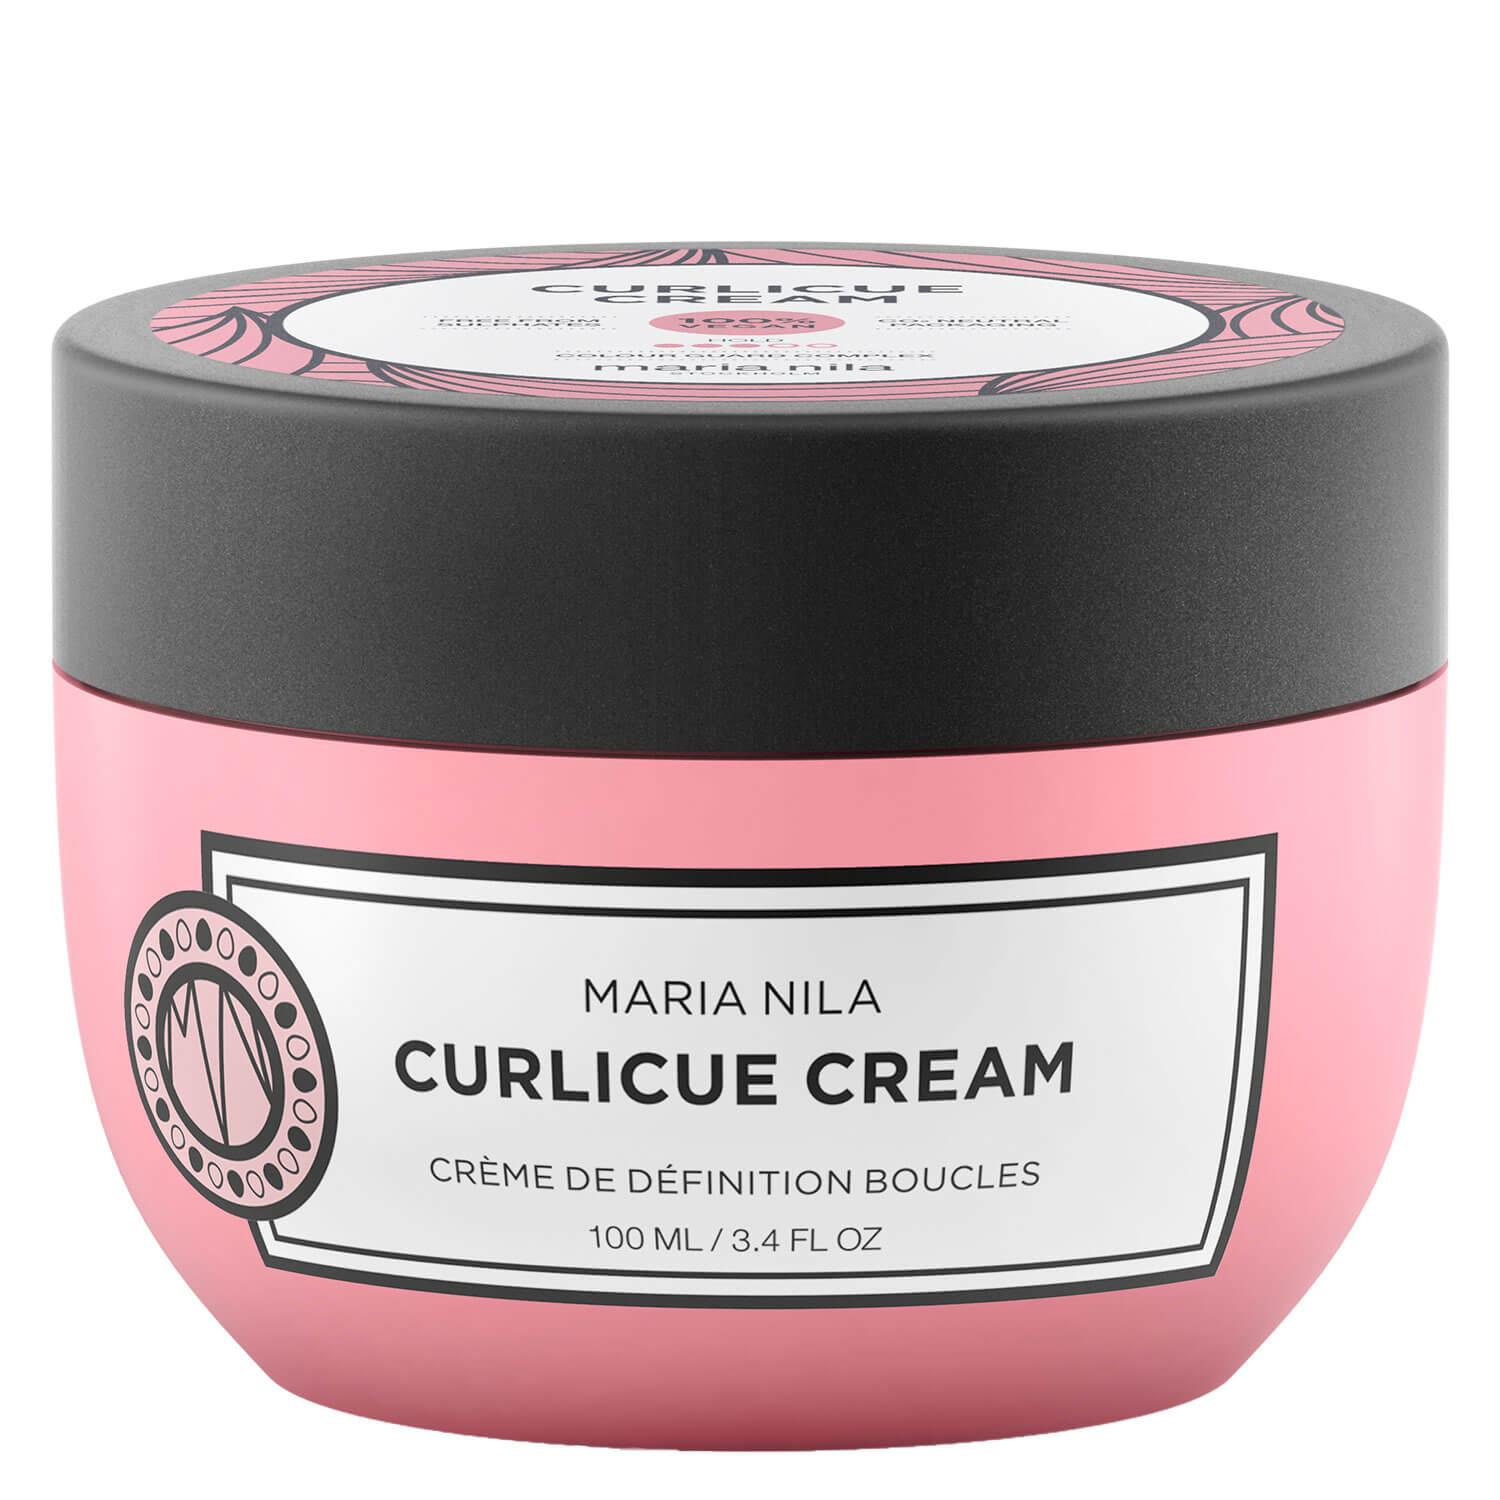 Style & Finish - Curlicue Cream